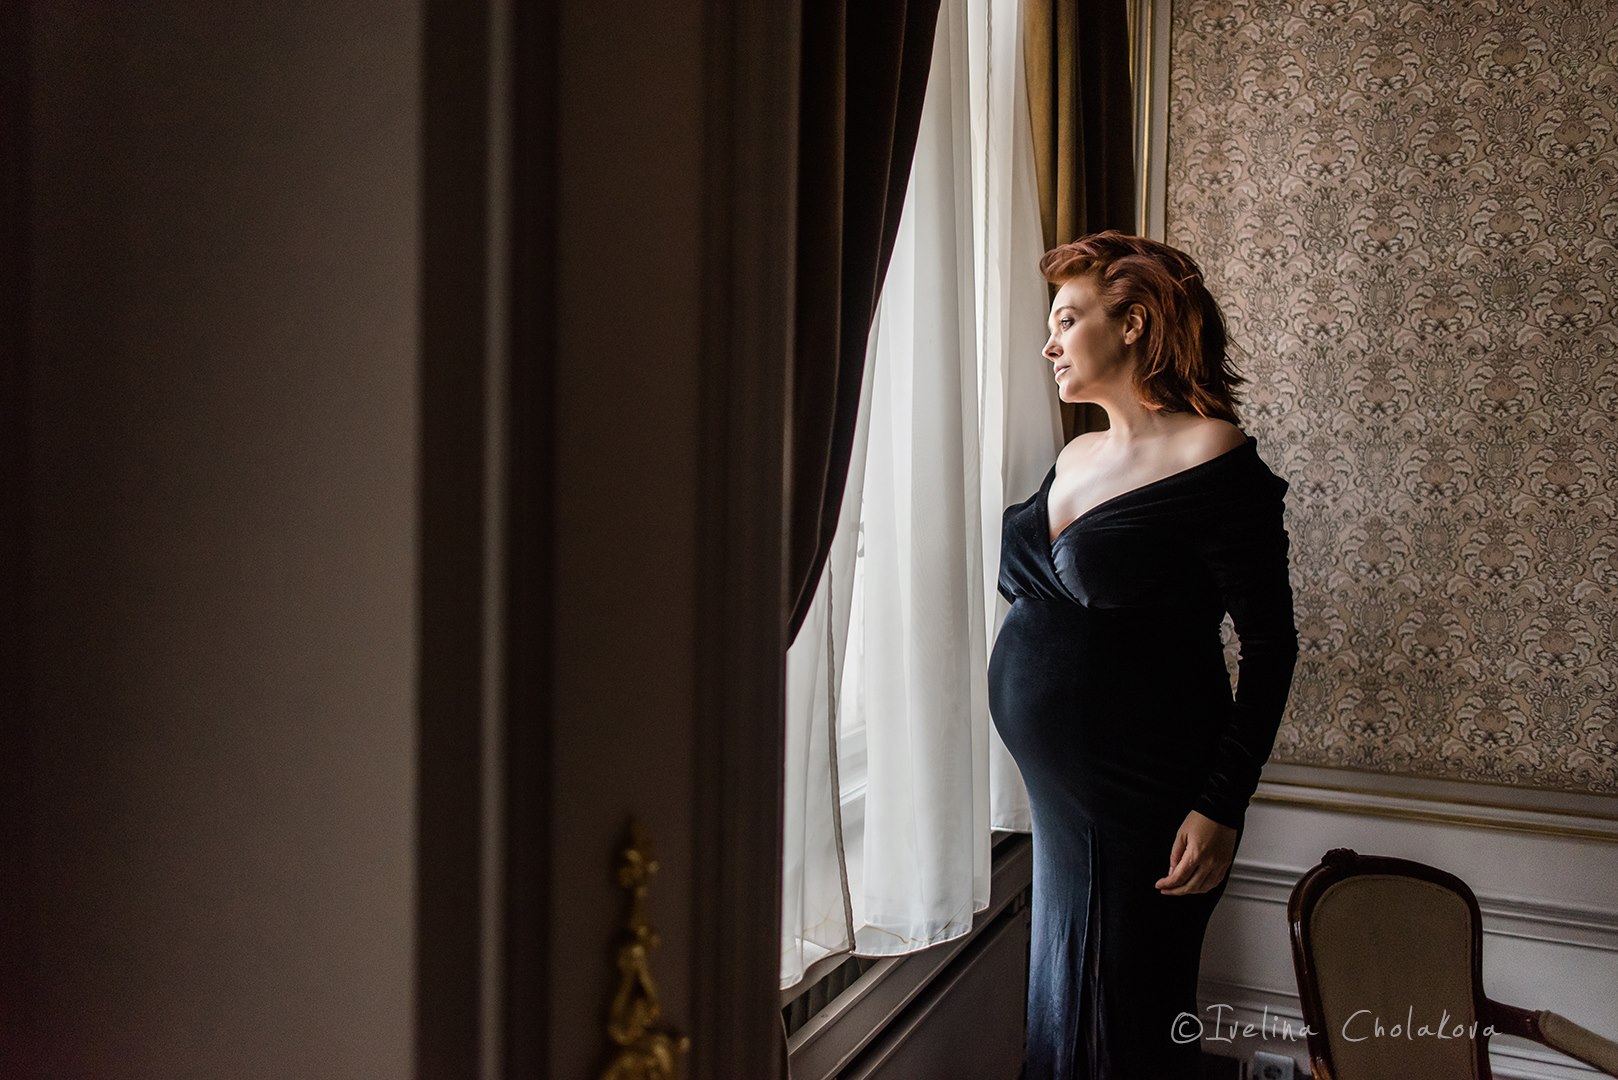 Биляна Петринска сияе бременна във фотосесия